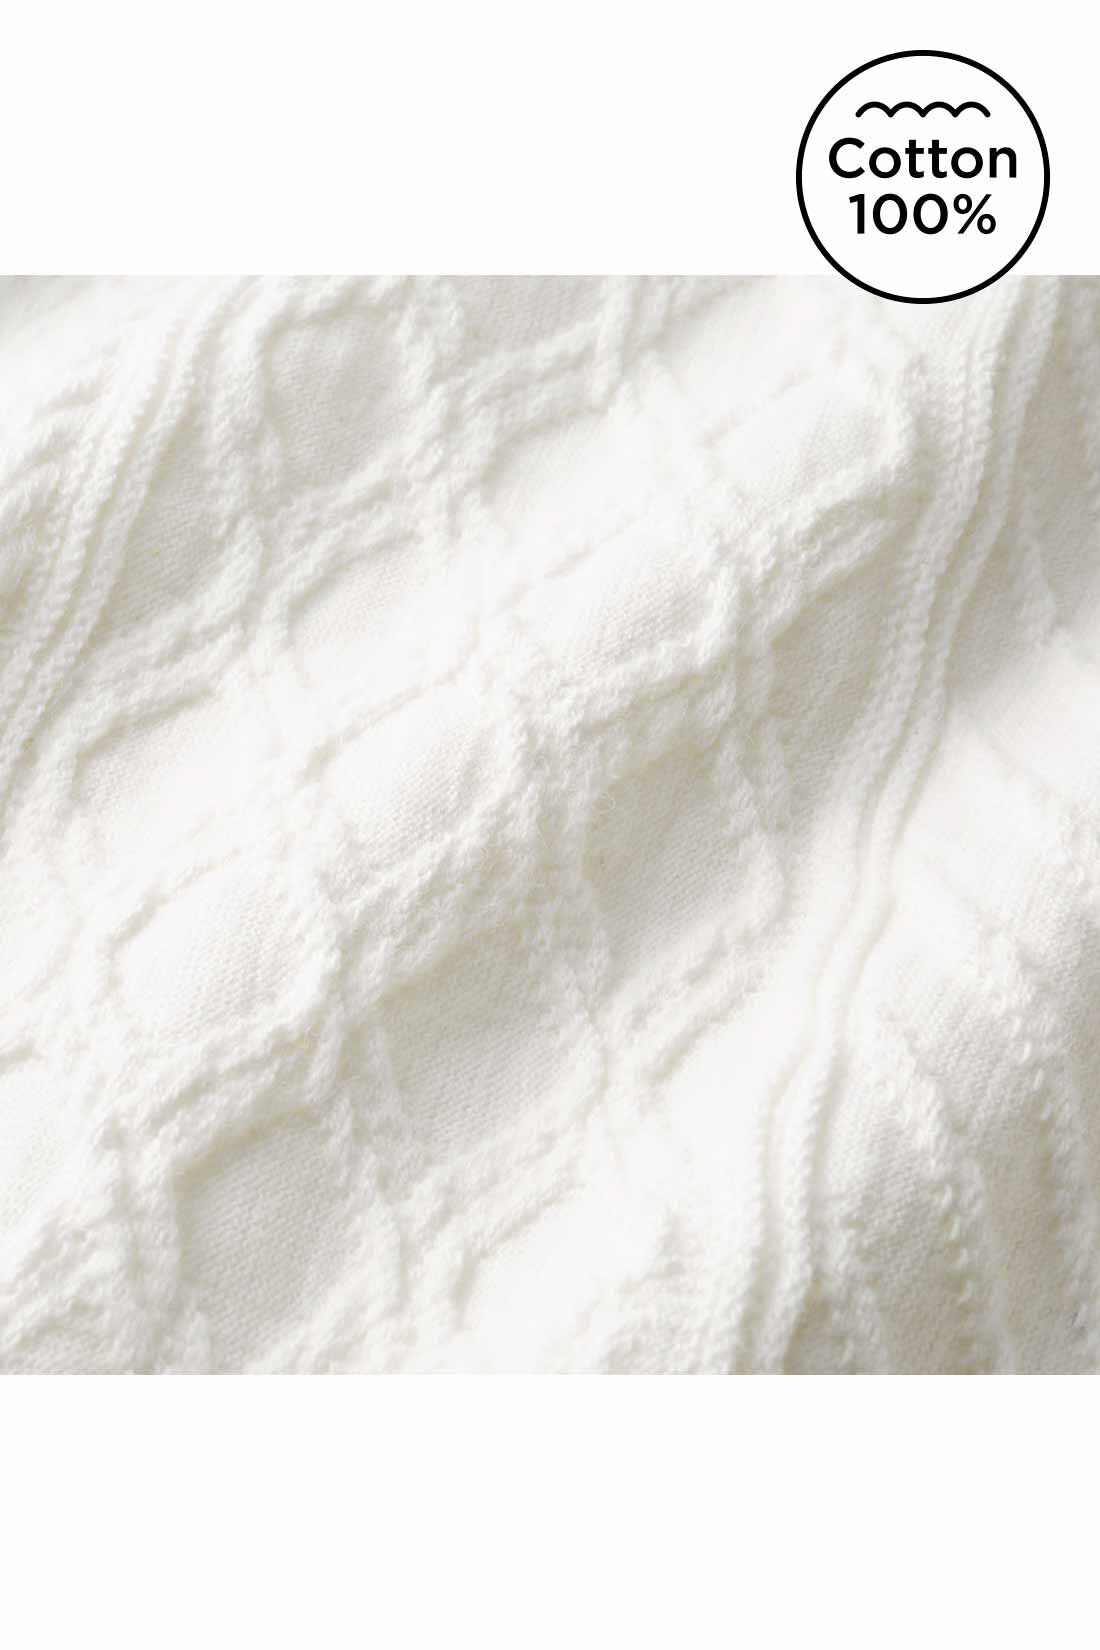 Live in  comfort|Live love cottonプロジェクト　リブ イン コンフォート　編み柄が素敵な袖口リブオーガニックコットントップス〈ミント〉|素肌に心地いいオーガニックコットン100％ 上品なキーネックやジャカード編みの高級感。ふっくらやさしく軽やかで、からだのラインを拾いにくい適度な厚みが◎。